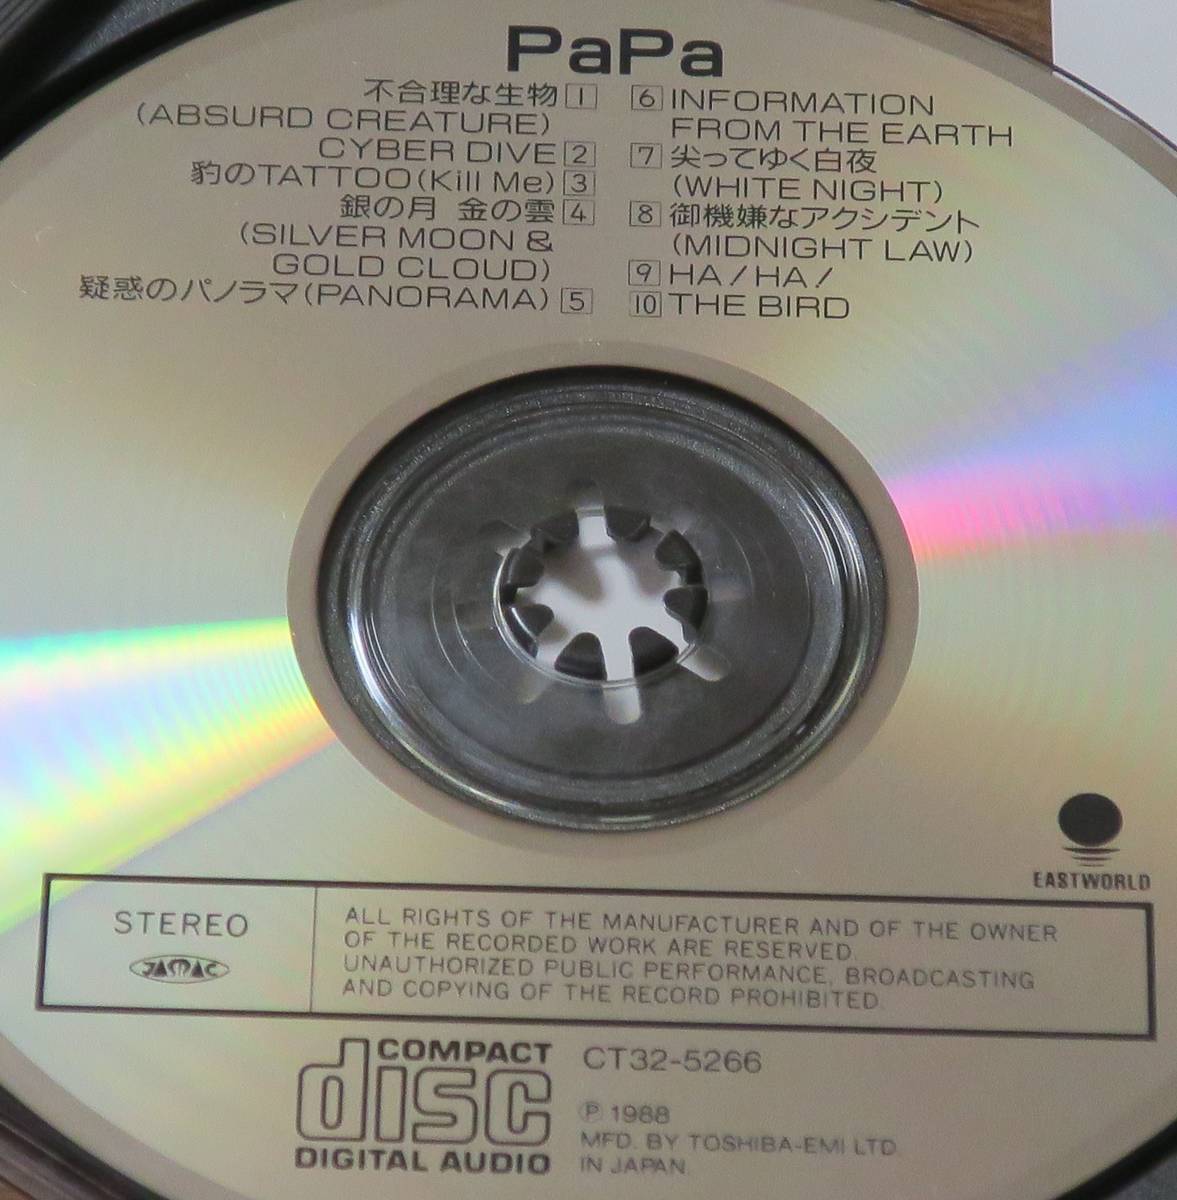 ... один PaPa. лист . папа Yamazaki .1st альбом ....CT32-5266... самец Steve Eto мир рисовое поле .../ сосна . превосходящий .CD не рациональность . живое существо [ осмотр ] Kikkawa Koji O,Bs. рисовое поле .